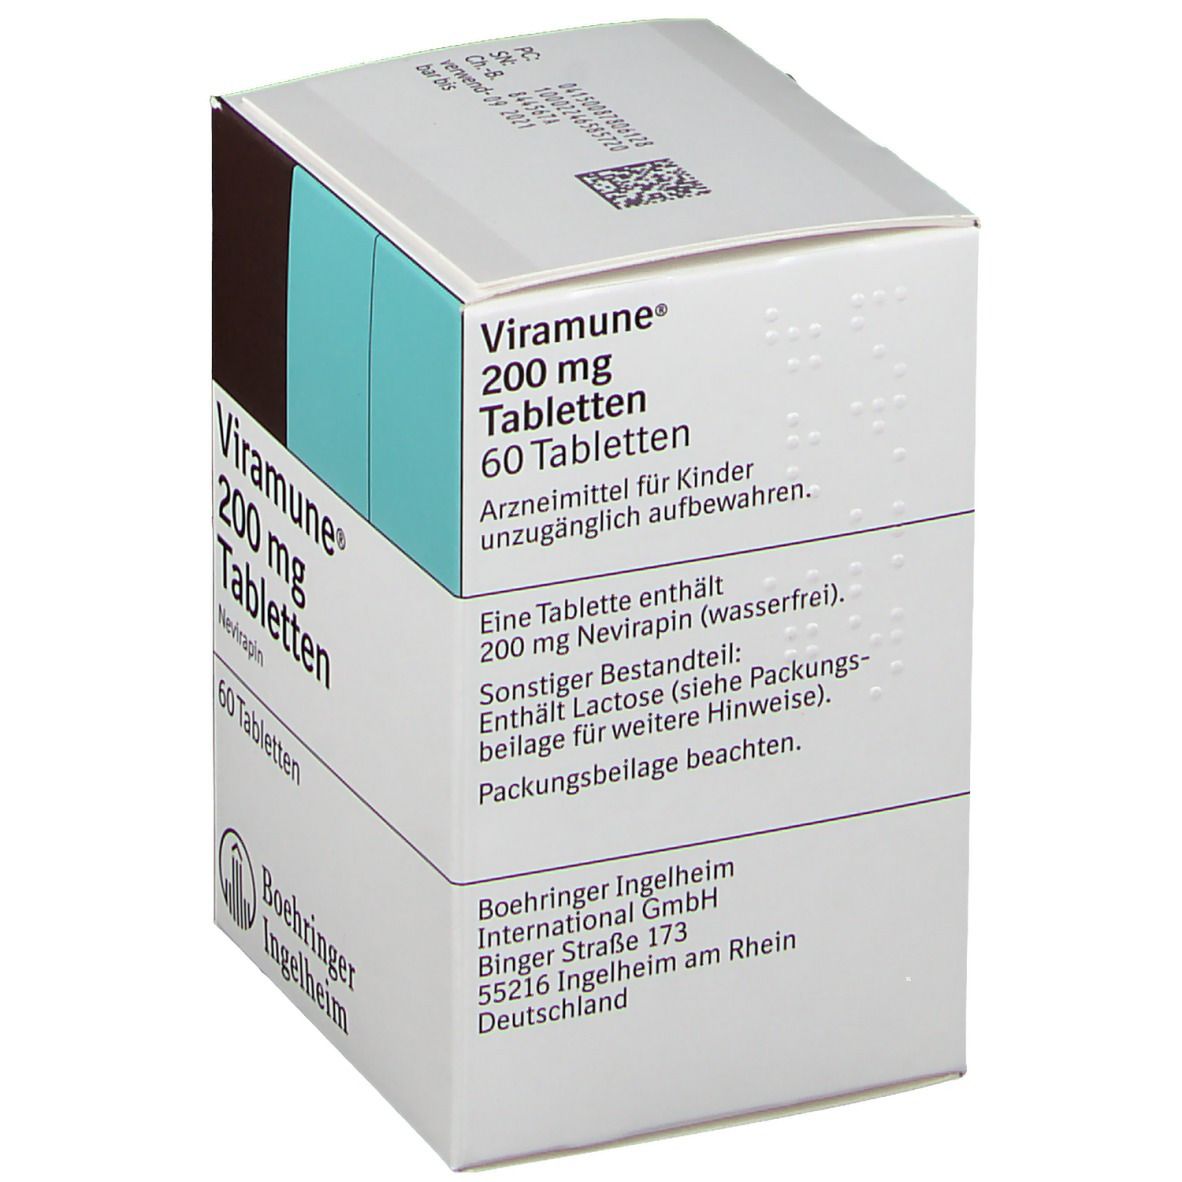 Viramune® 200 mg